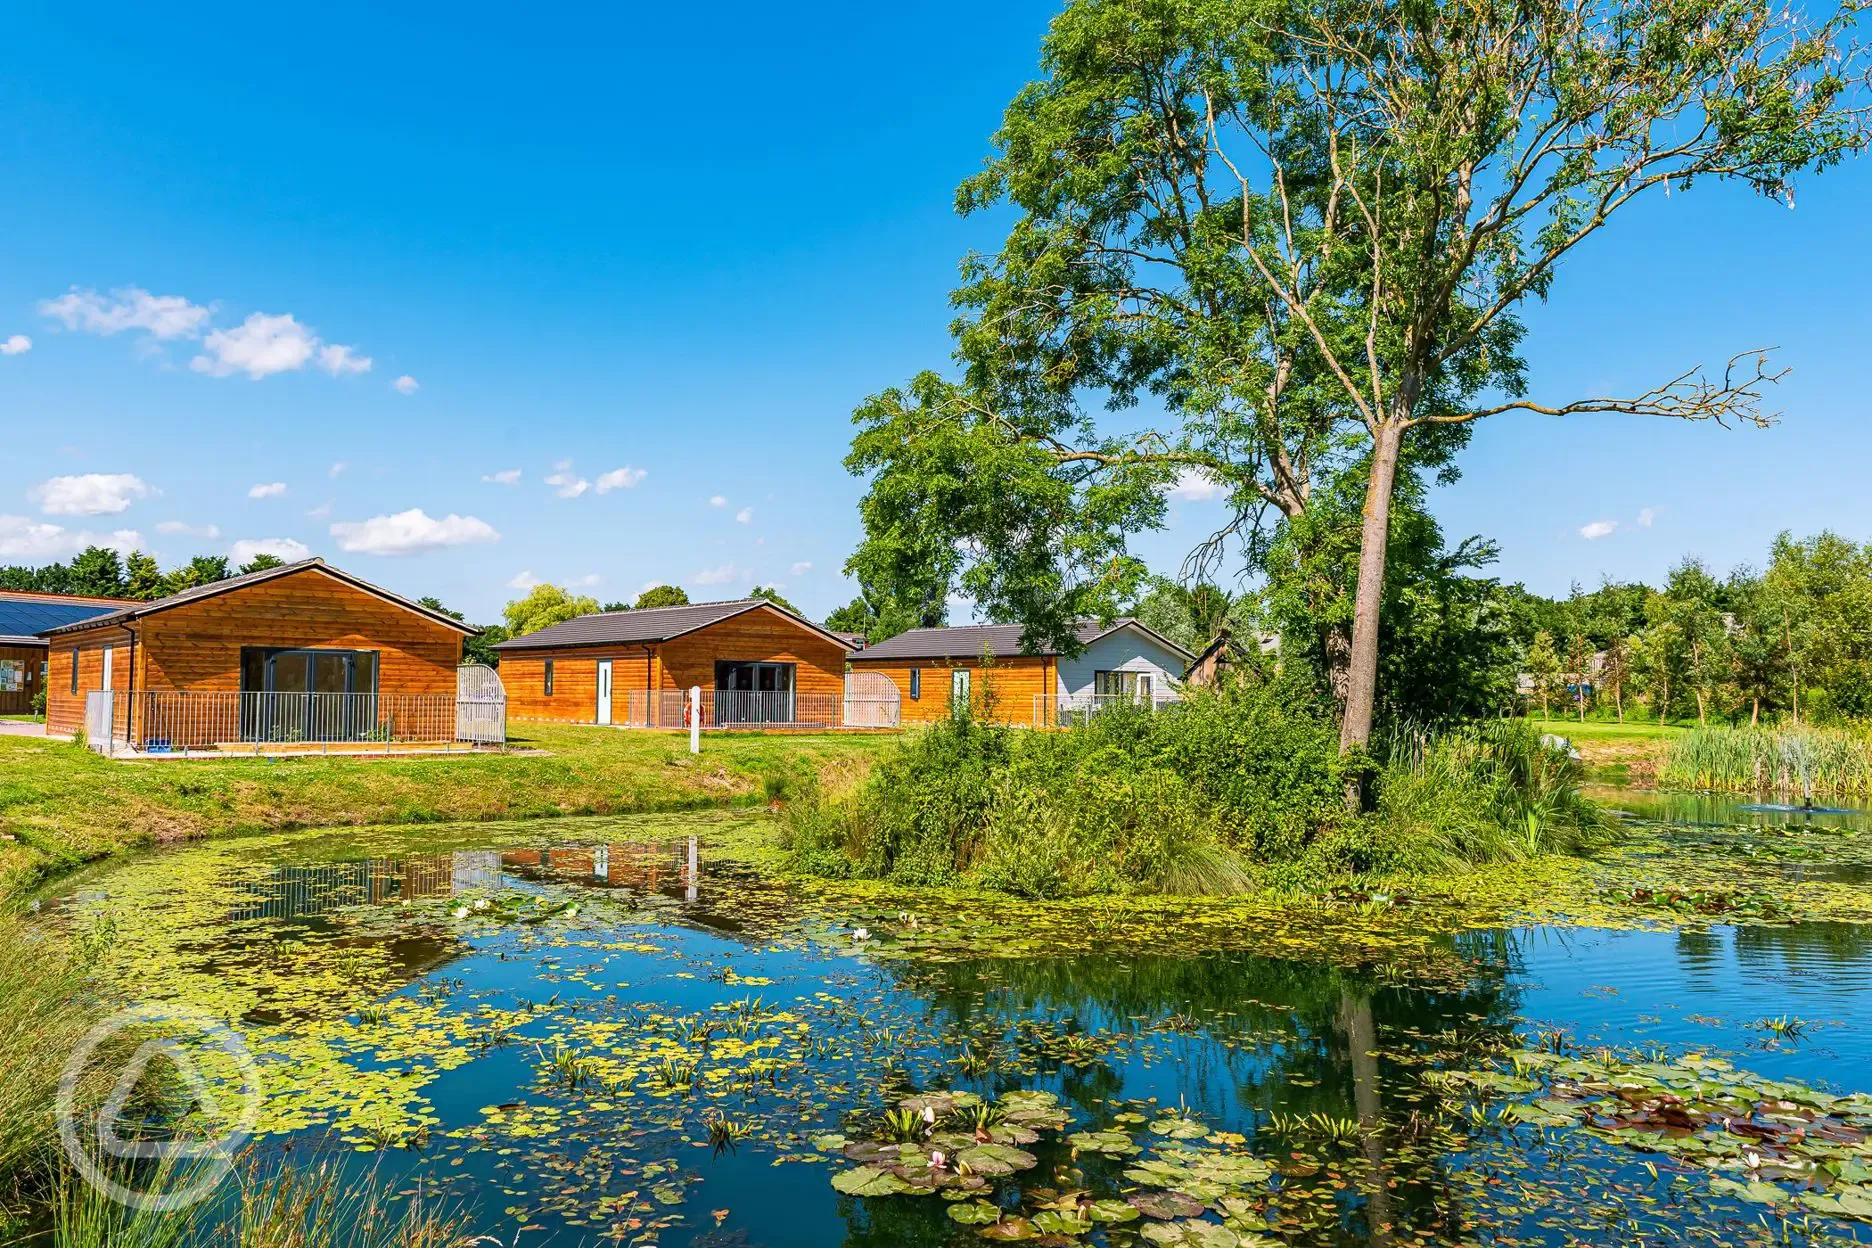 Luxury log cabins overlooking the lake